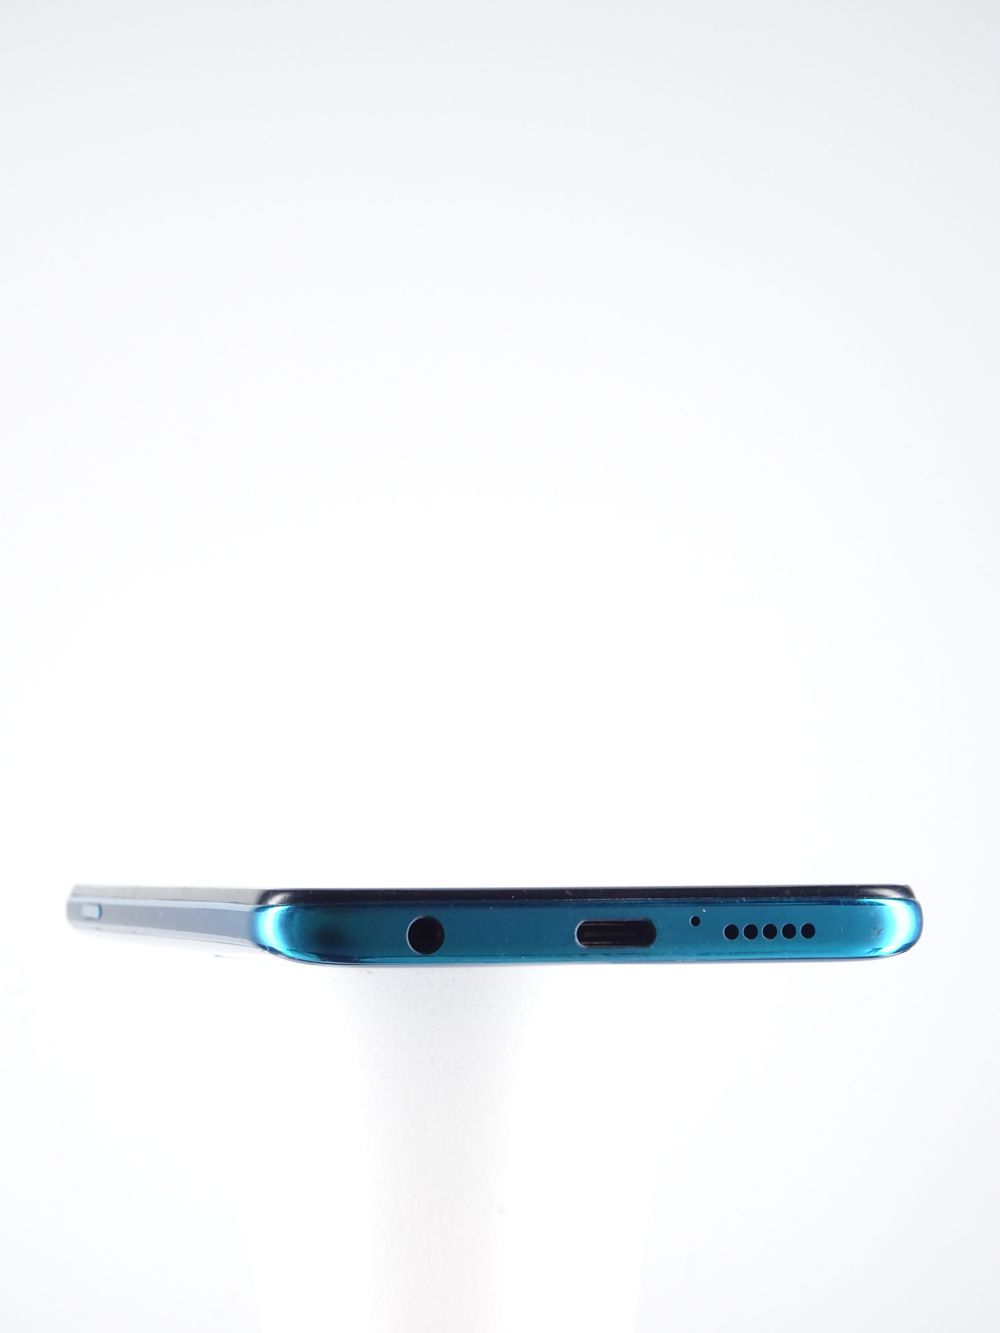 Telefon mobil Xiaomi Redmi Note 9S, Aurora Blue, 64 GB,  Foarte Bun